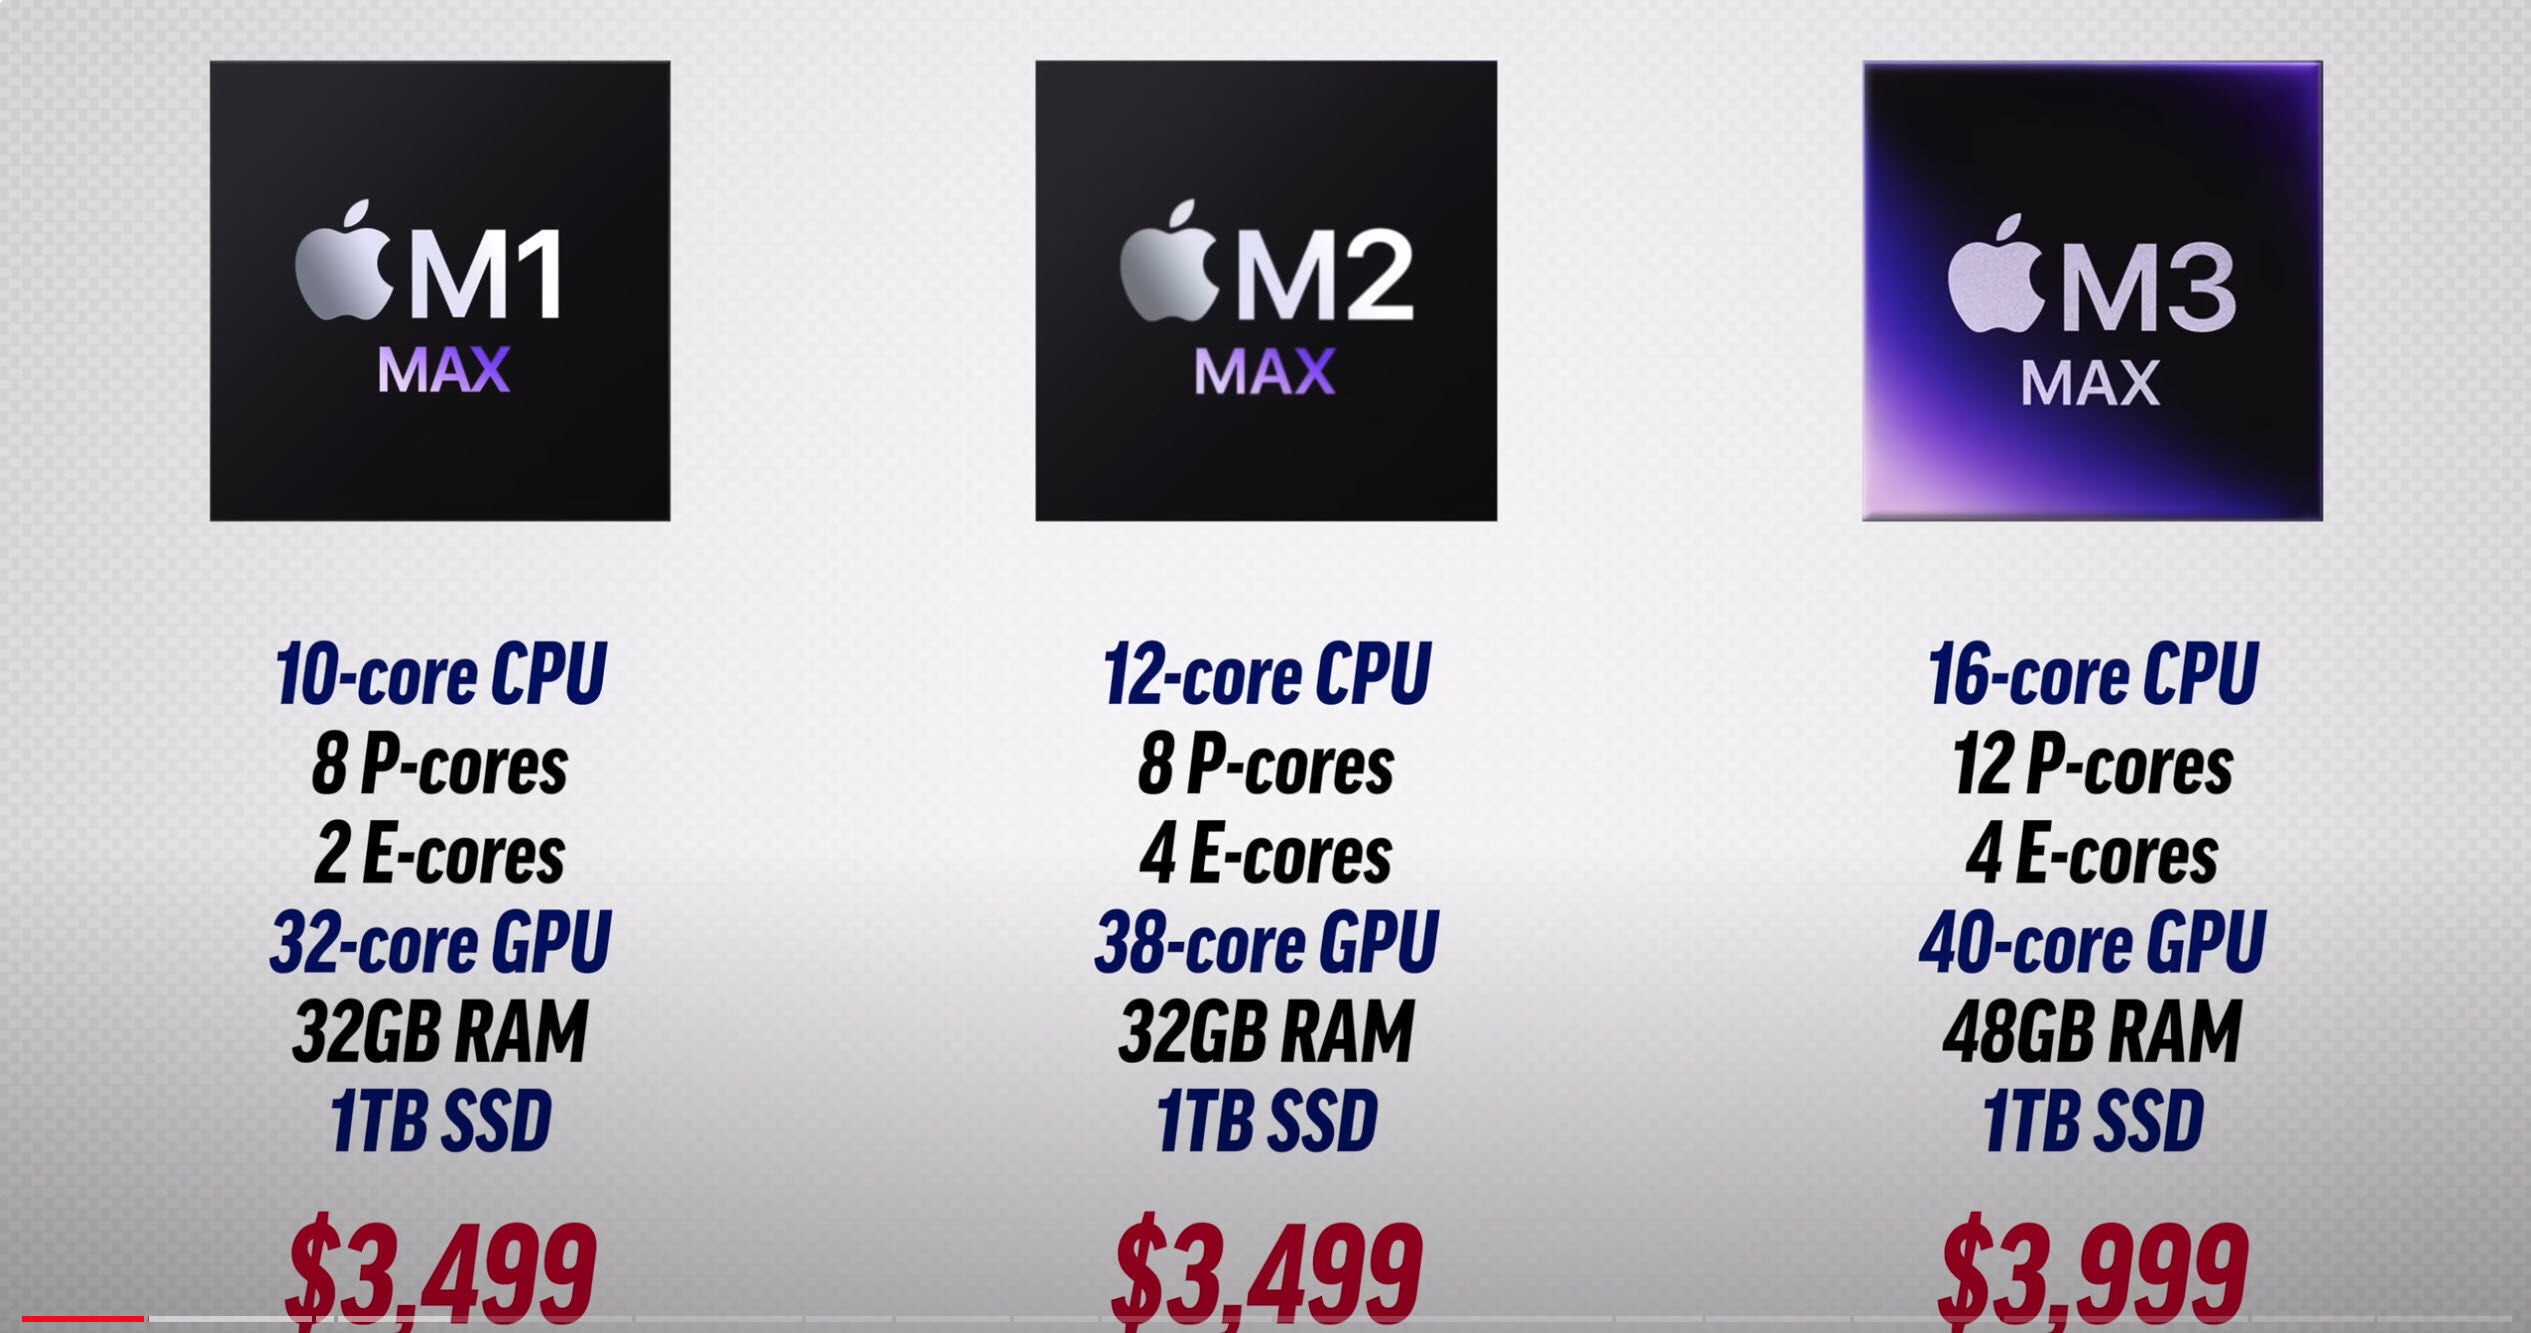 Apple] Mac Mini 2023 - M2 - $669 education discount - Page 49 -  RedFlagDeals.com Forums